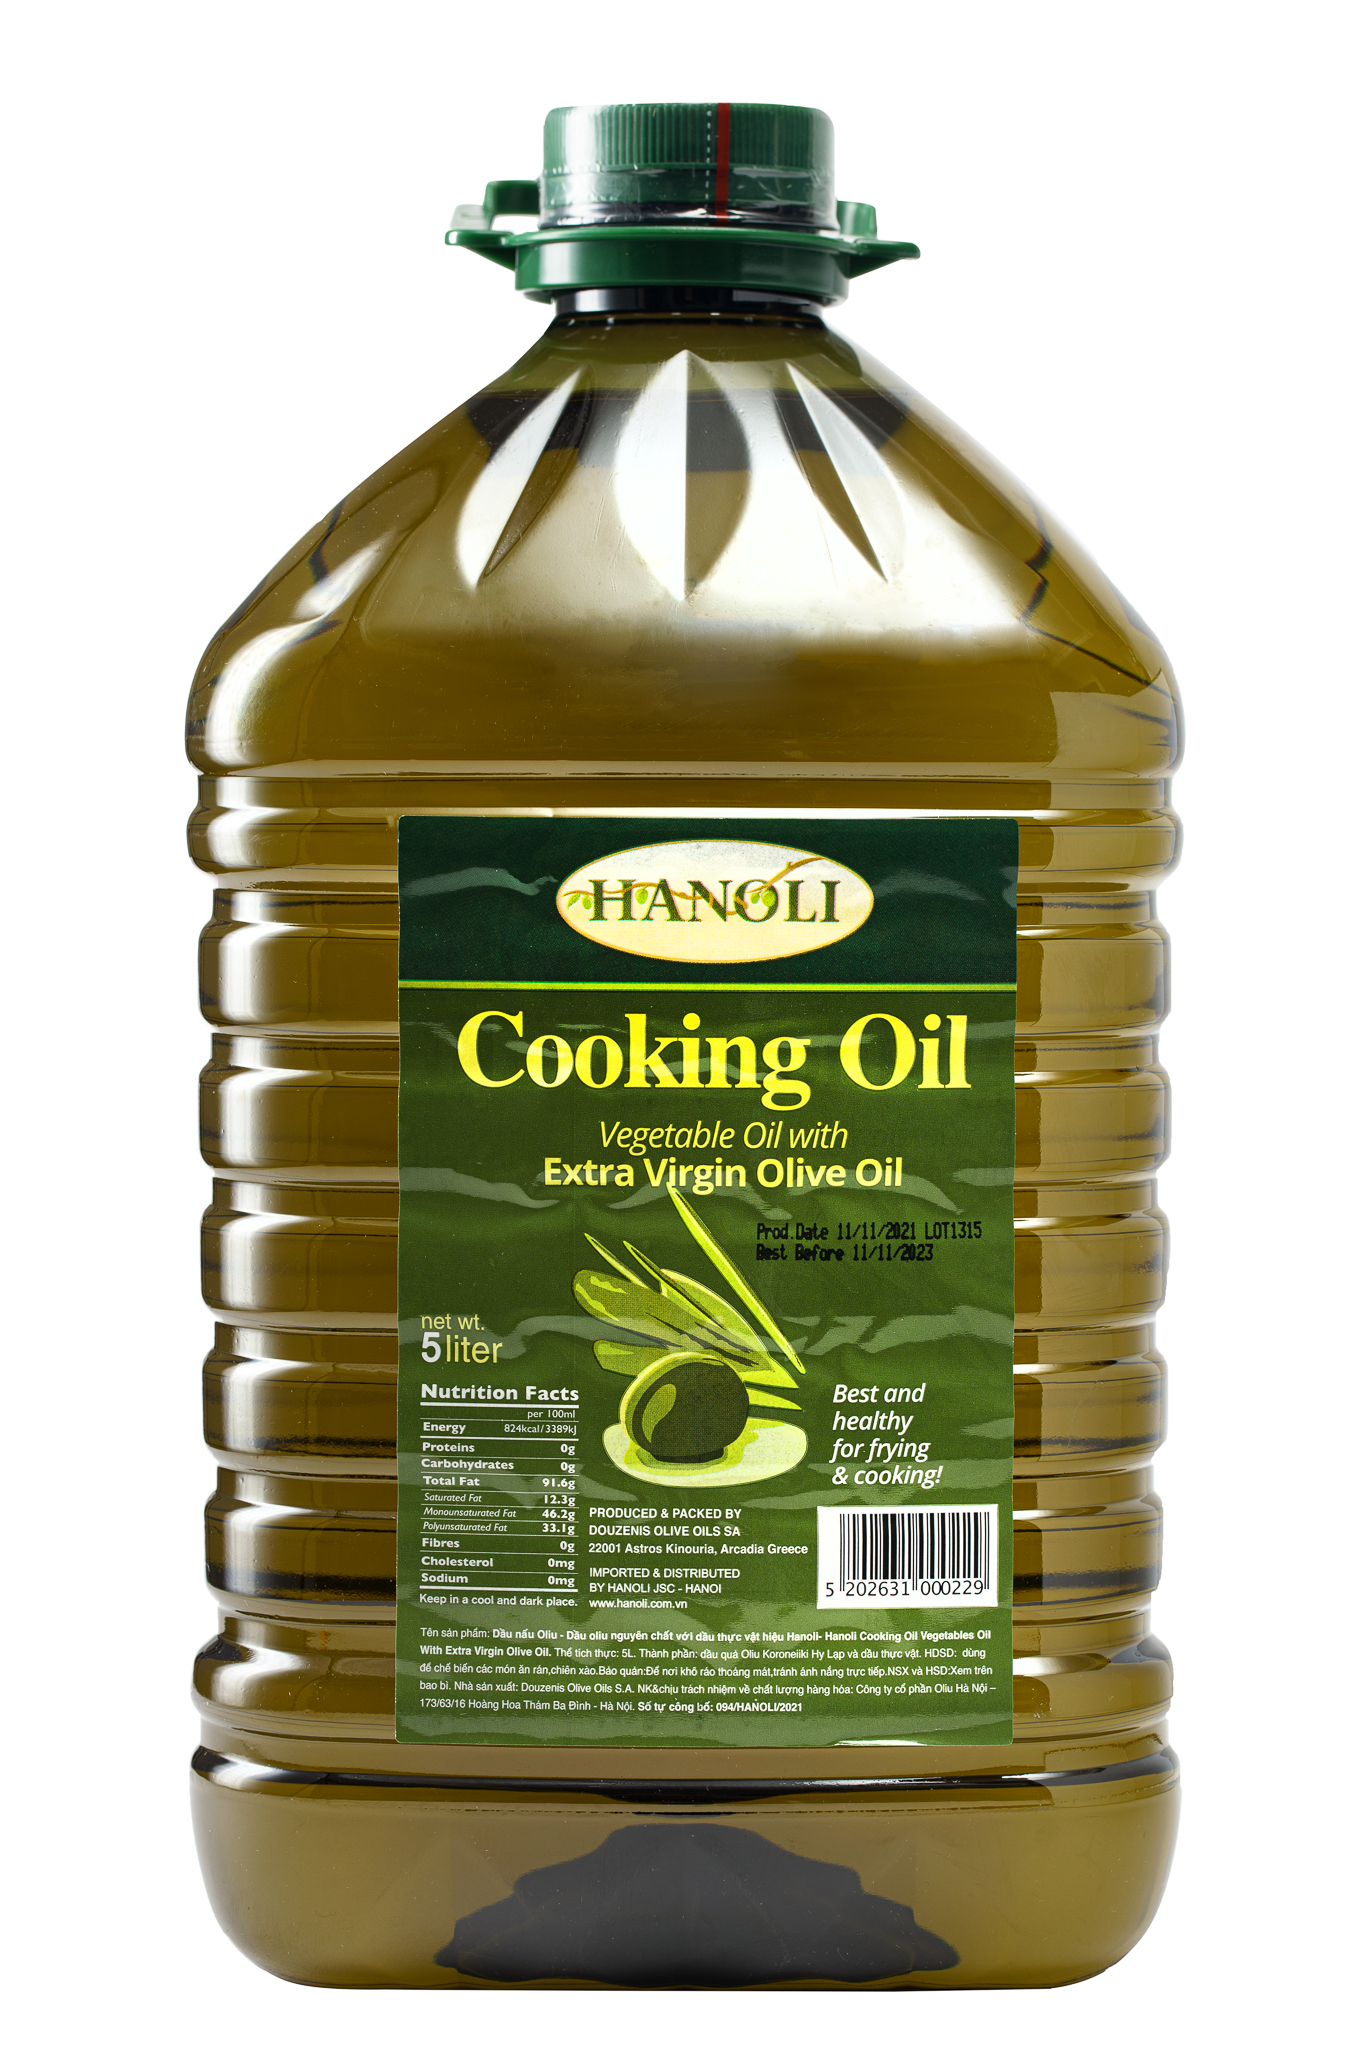 Combo thùng 4 chai dầu ăn oliu hanoli chai 5l chứa 75% dầu oliu siêu - ảnh sản phẩm 2